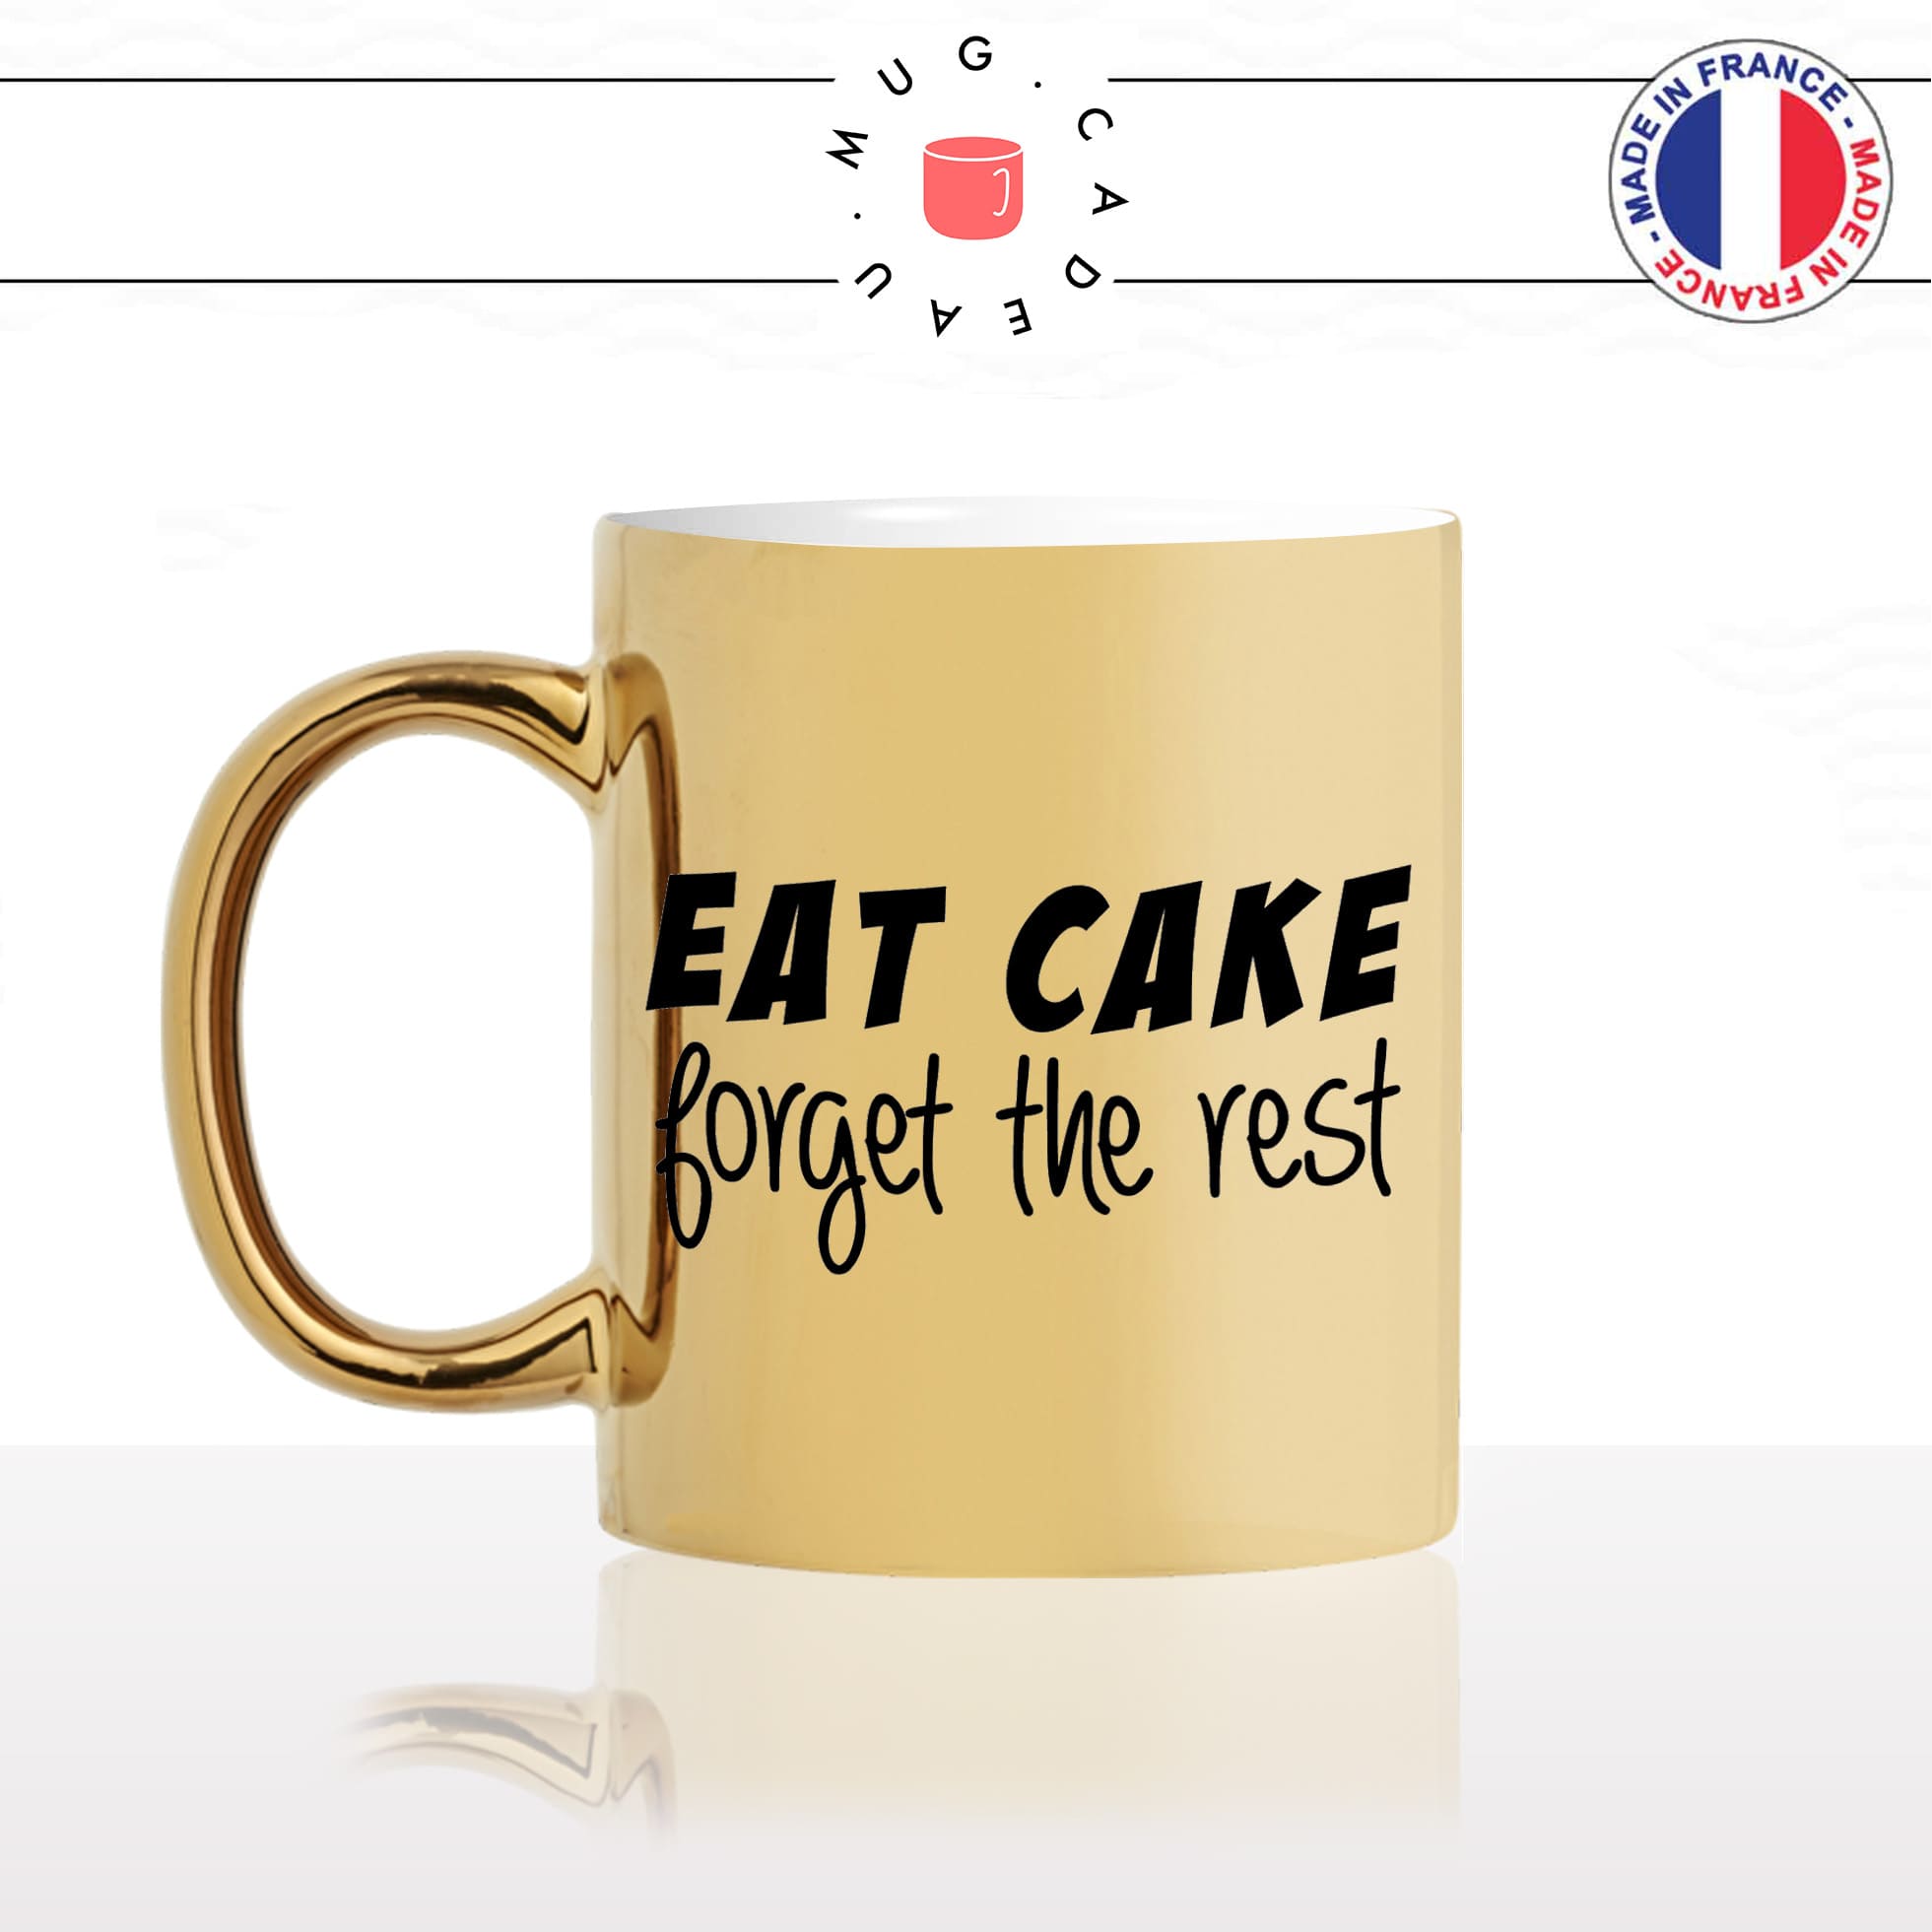 mug-tasse-or-doré-gold-unique-eat-cake-forget-the-rest-mange-gateau-chocolat-homme-femme-humour-fun-cool-idée-cadeau-original-personnalisé